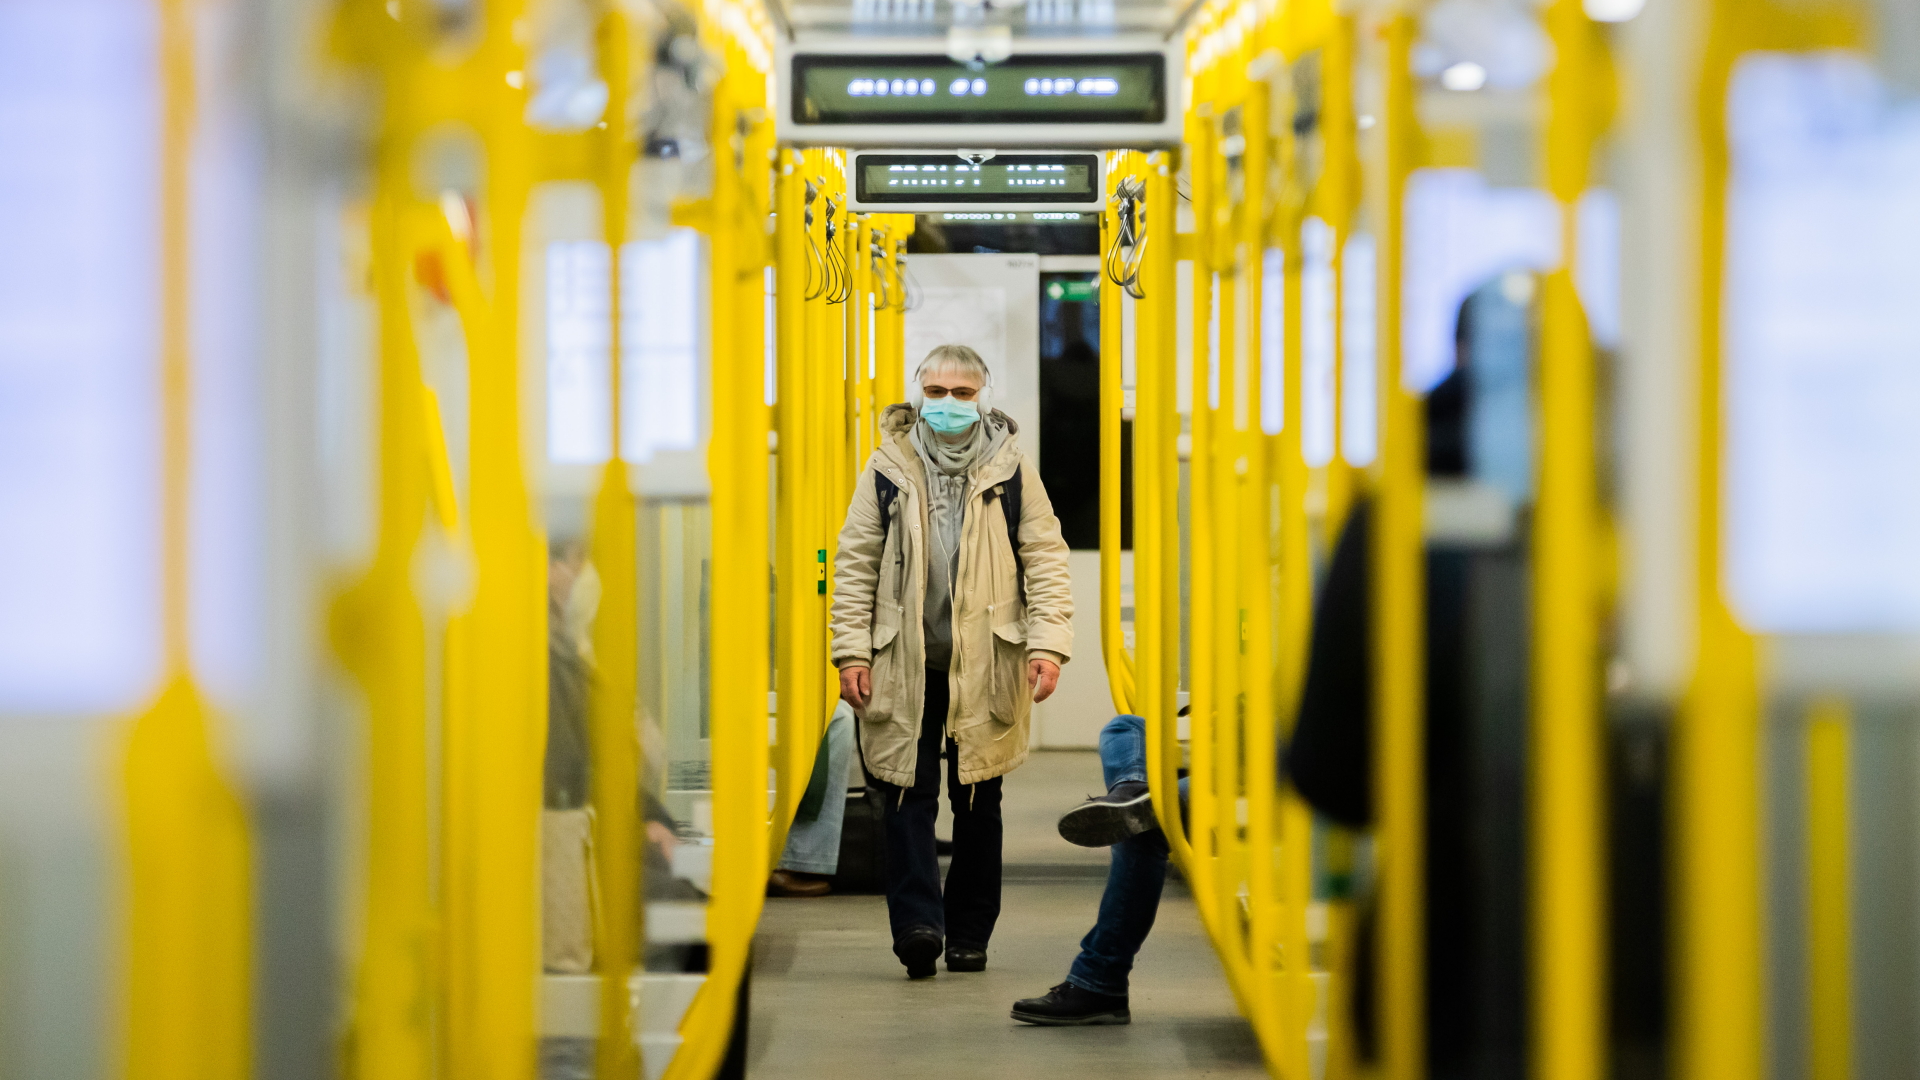 Passagier mit Maske in der Berliner U-Bahn